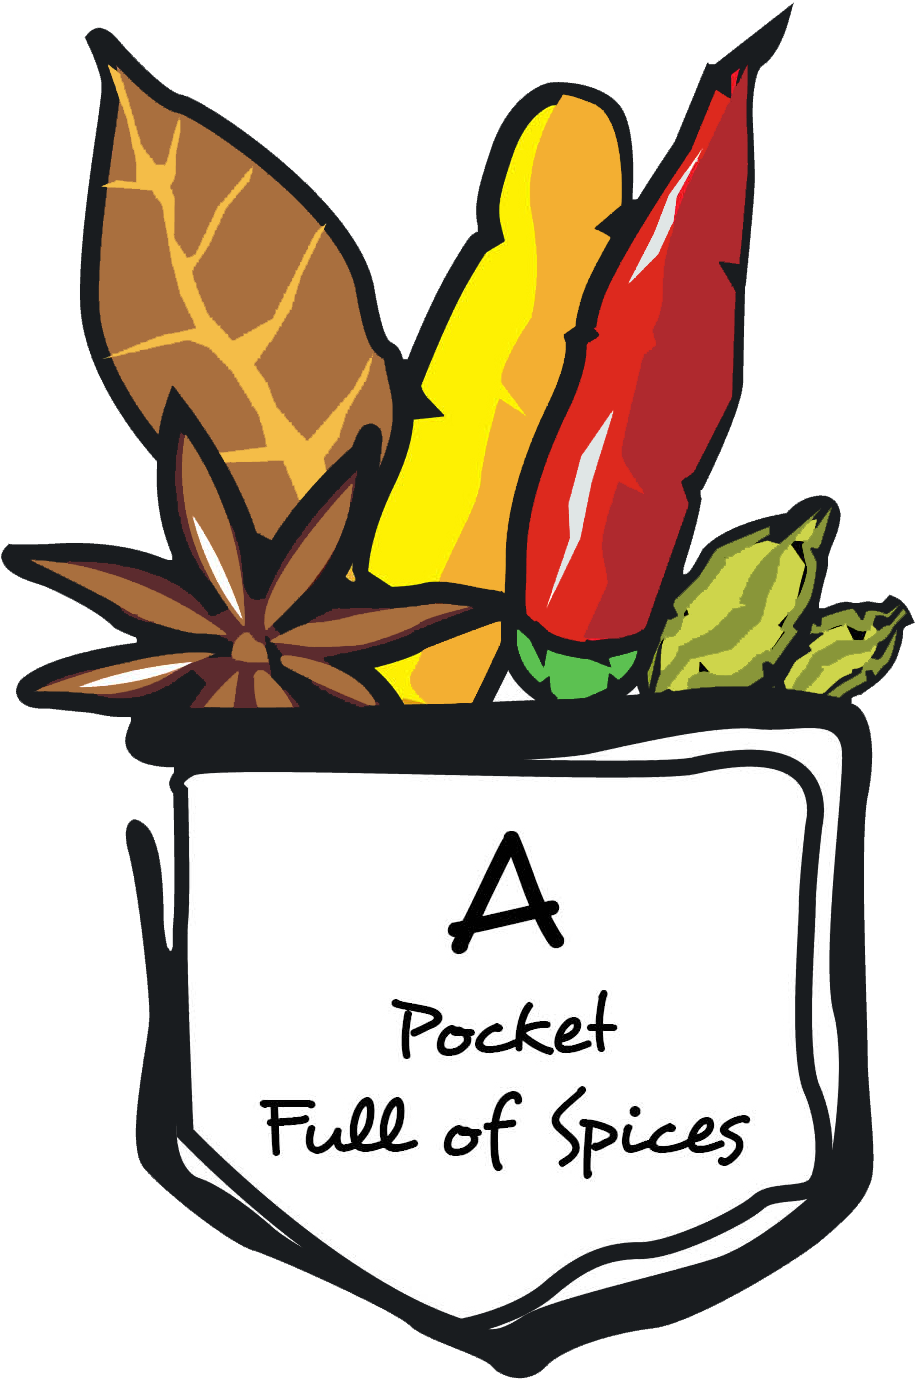 A Pocket Full Of Spices - Pocket Full Of Spices (993x1449)